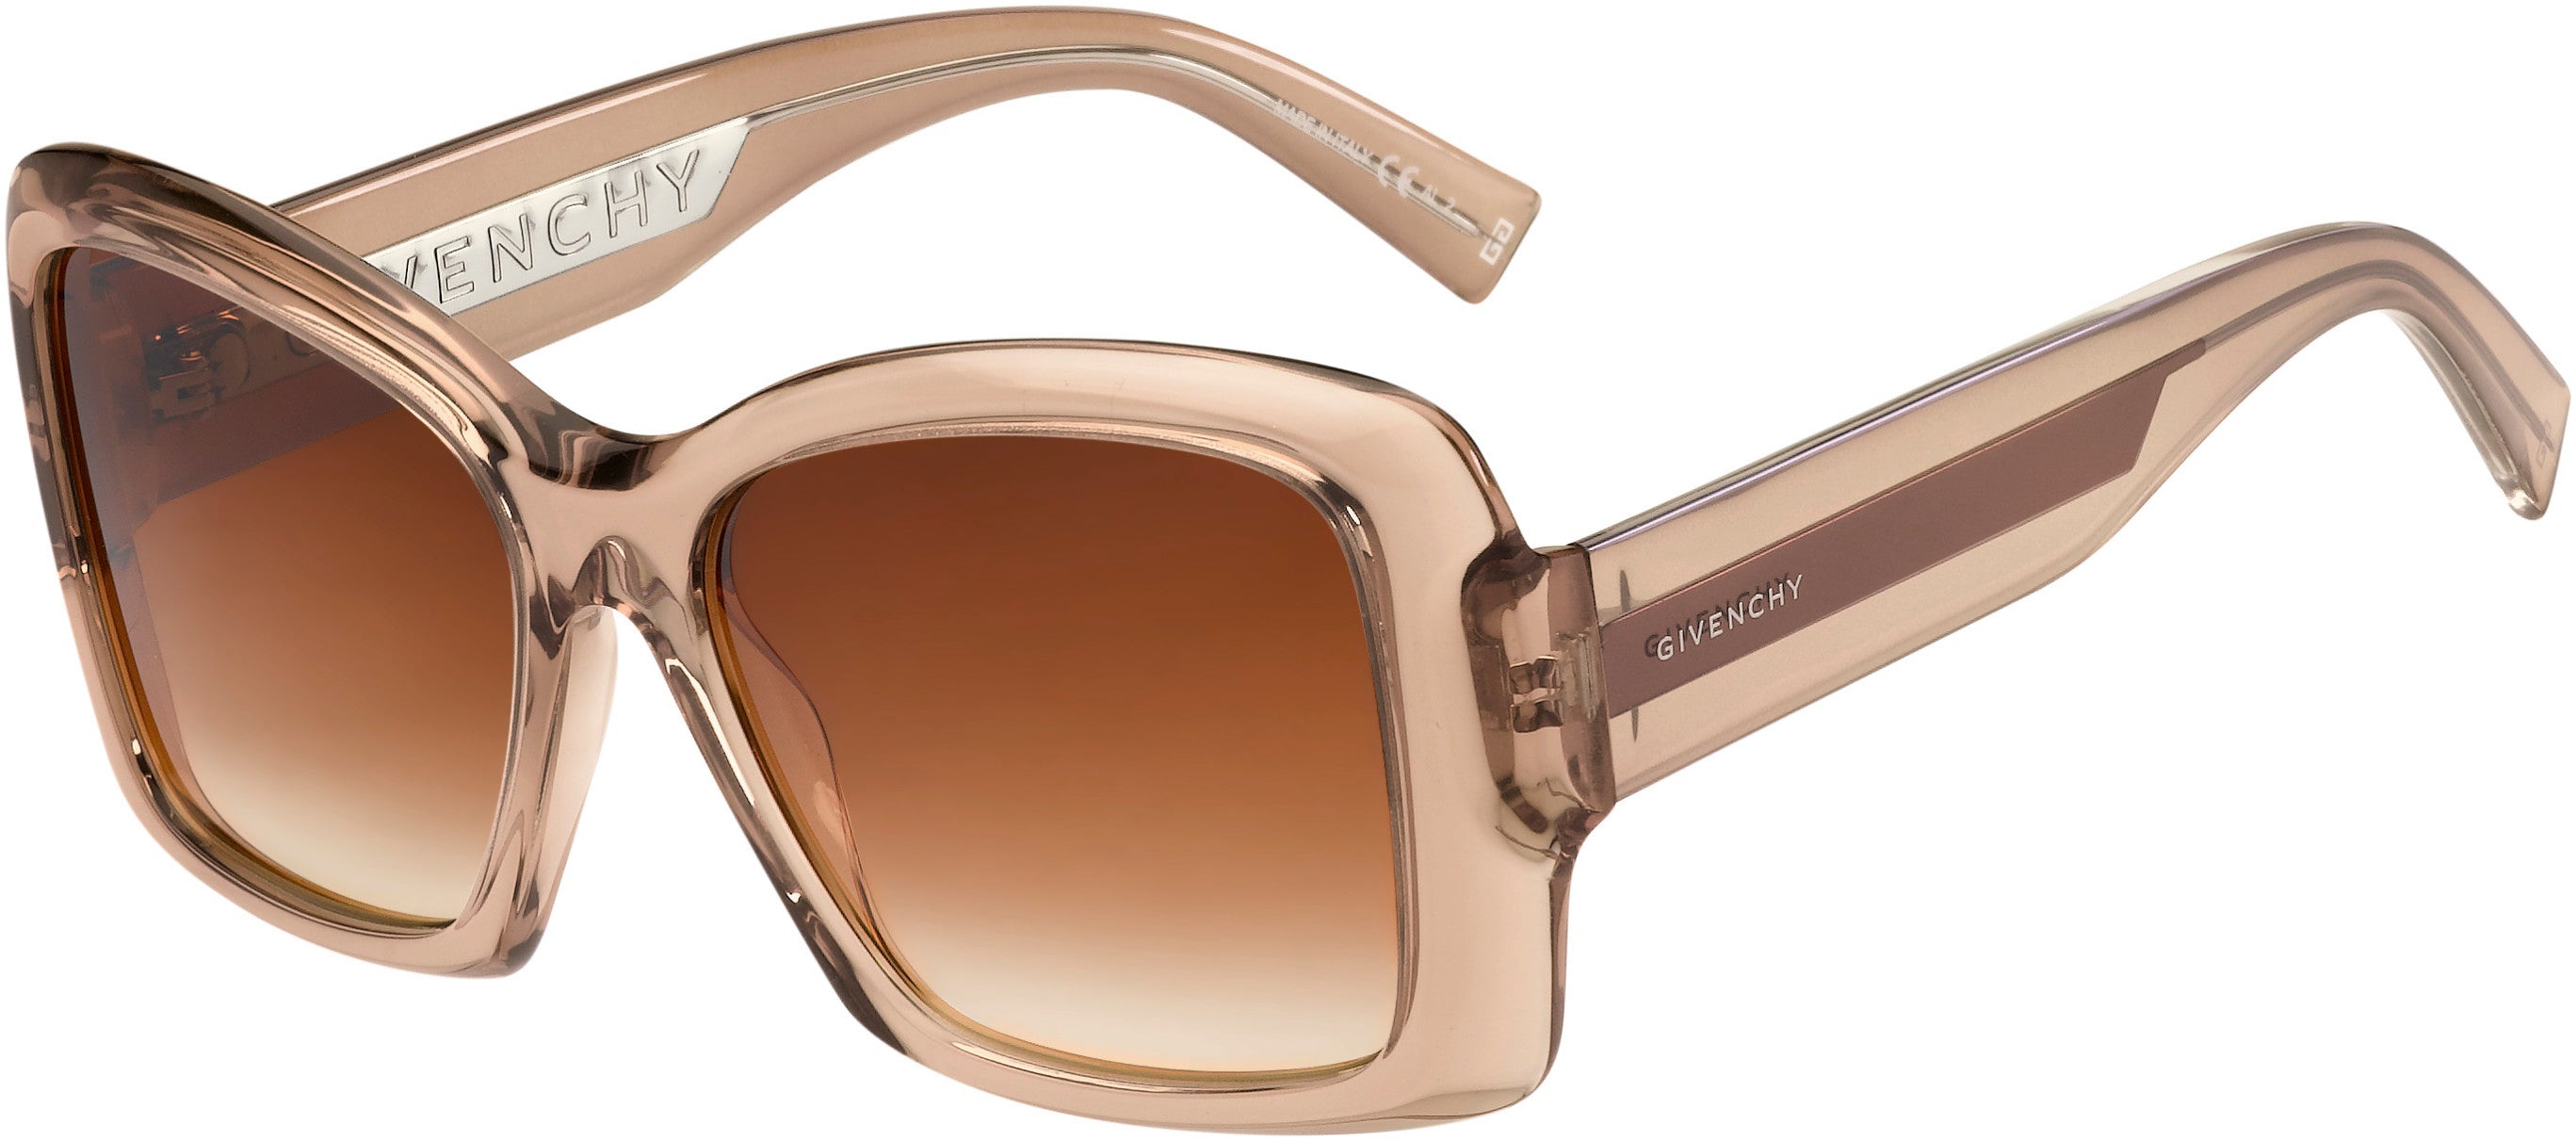  Givenchy 7186/S Square Sunglasses 0FWM-0FWM  Nude (HA Brown Gradient)